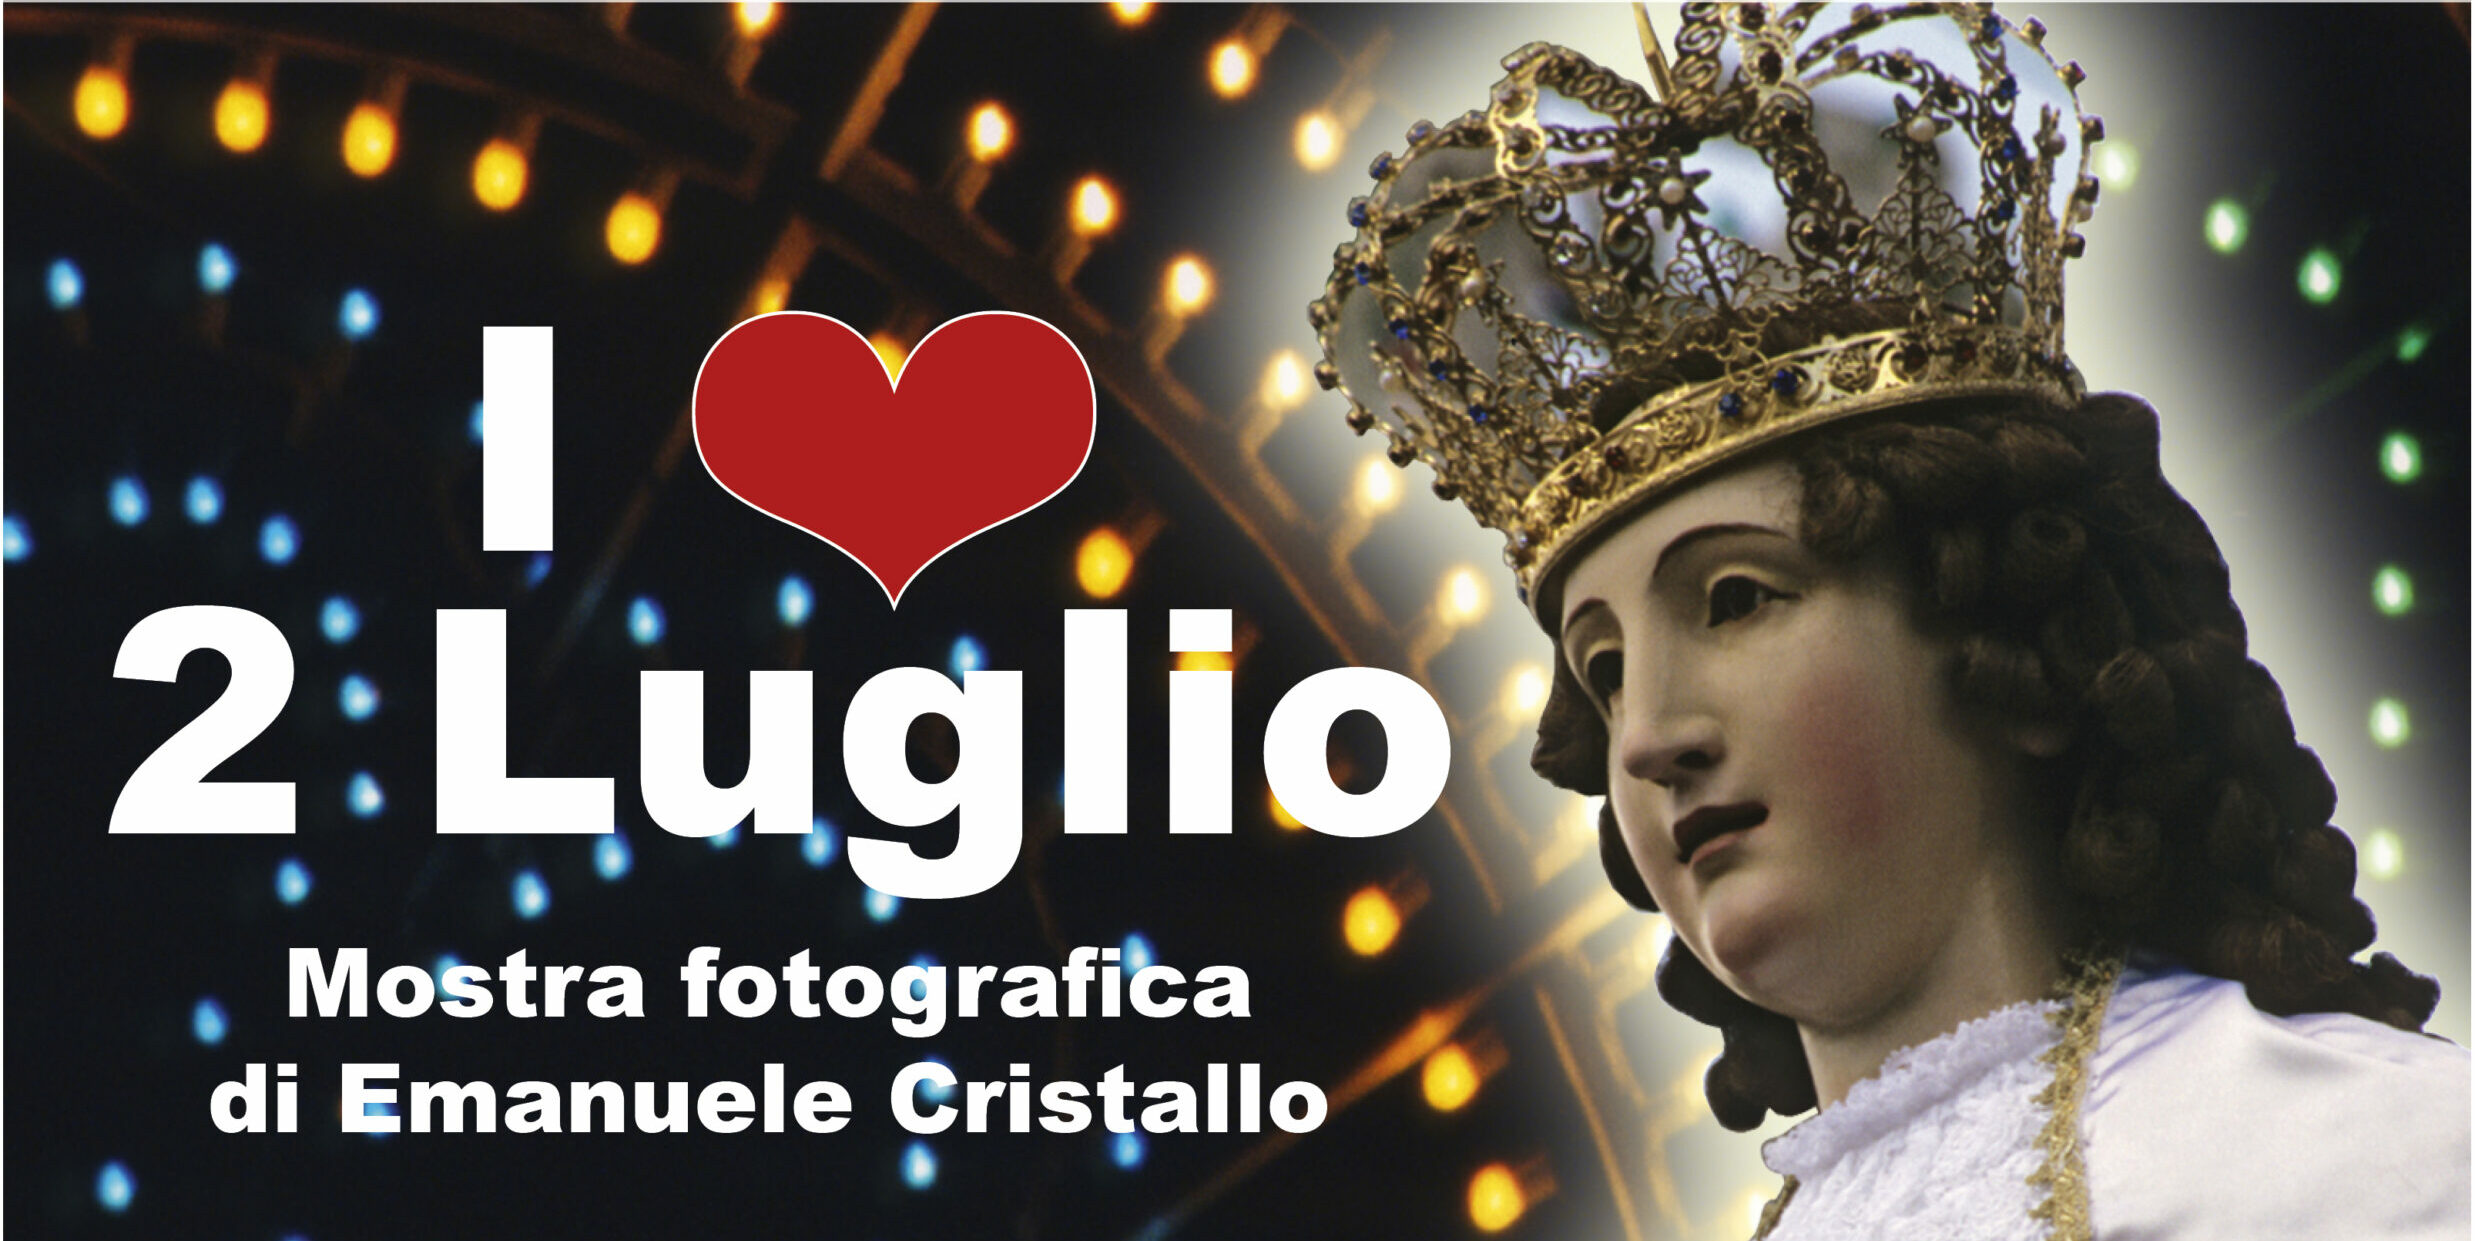 “I love 2 luglio”, il 28 inaugurazione della mostra fotografica di Emanuele Cristallo